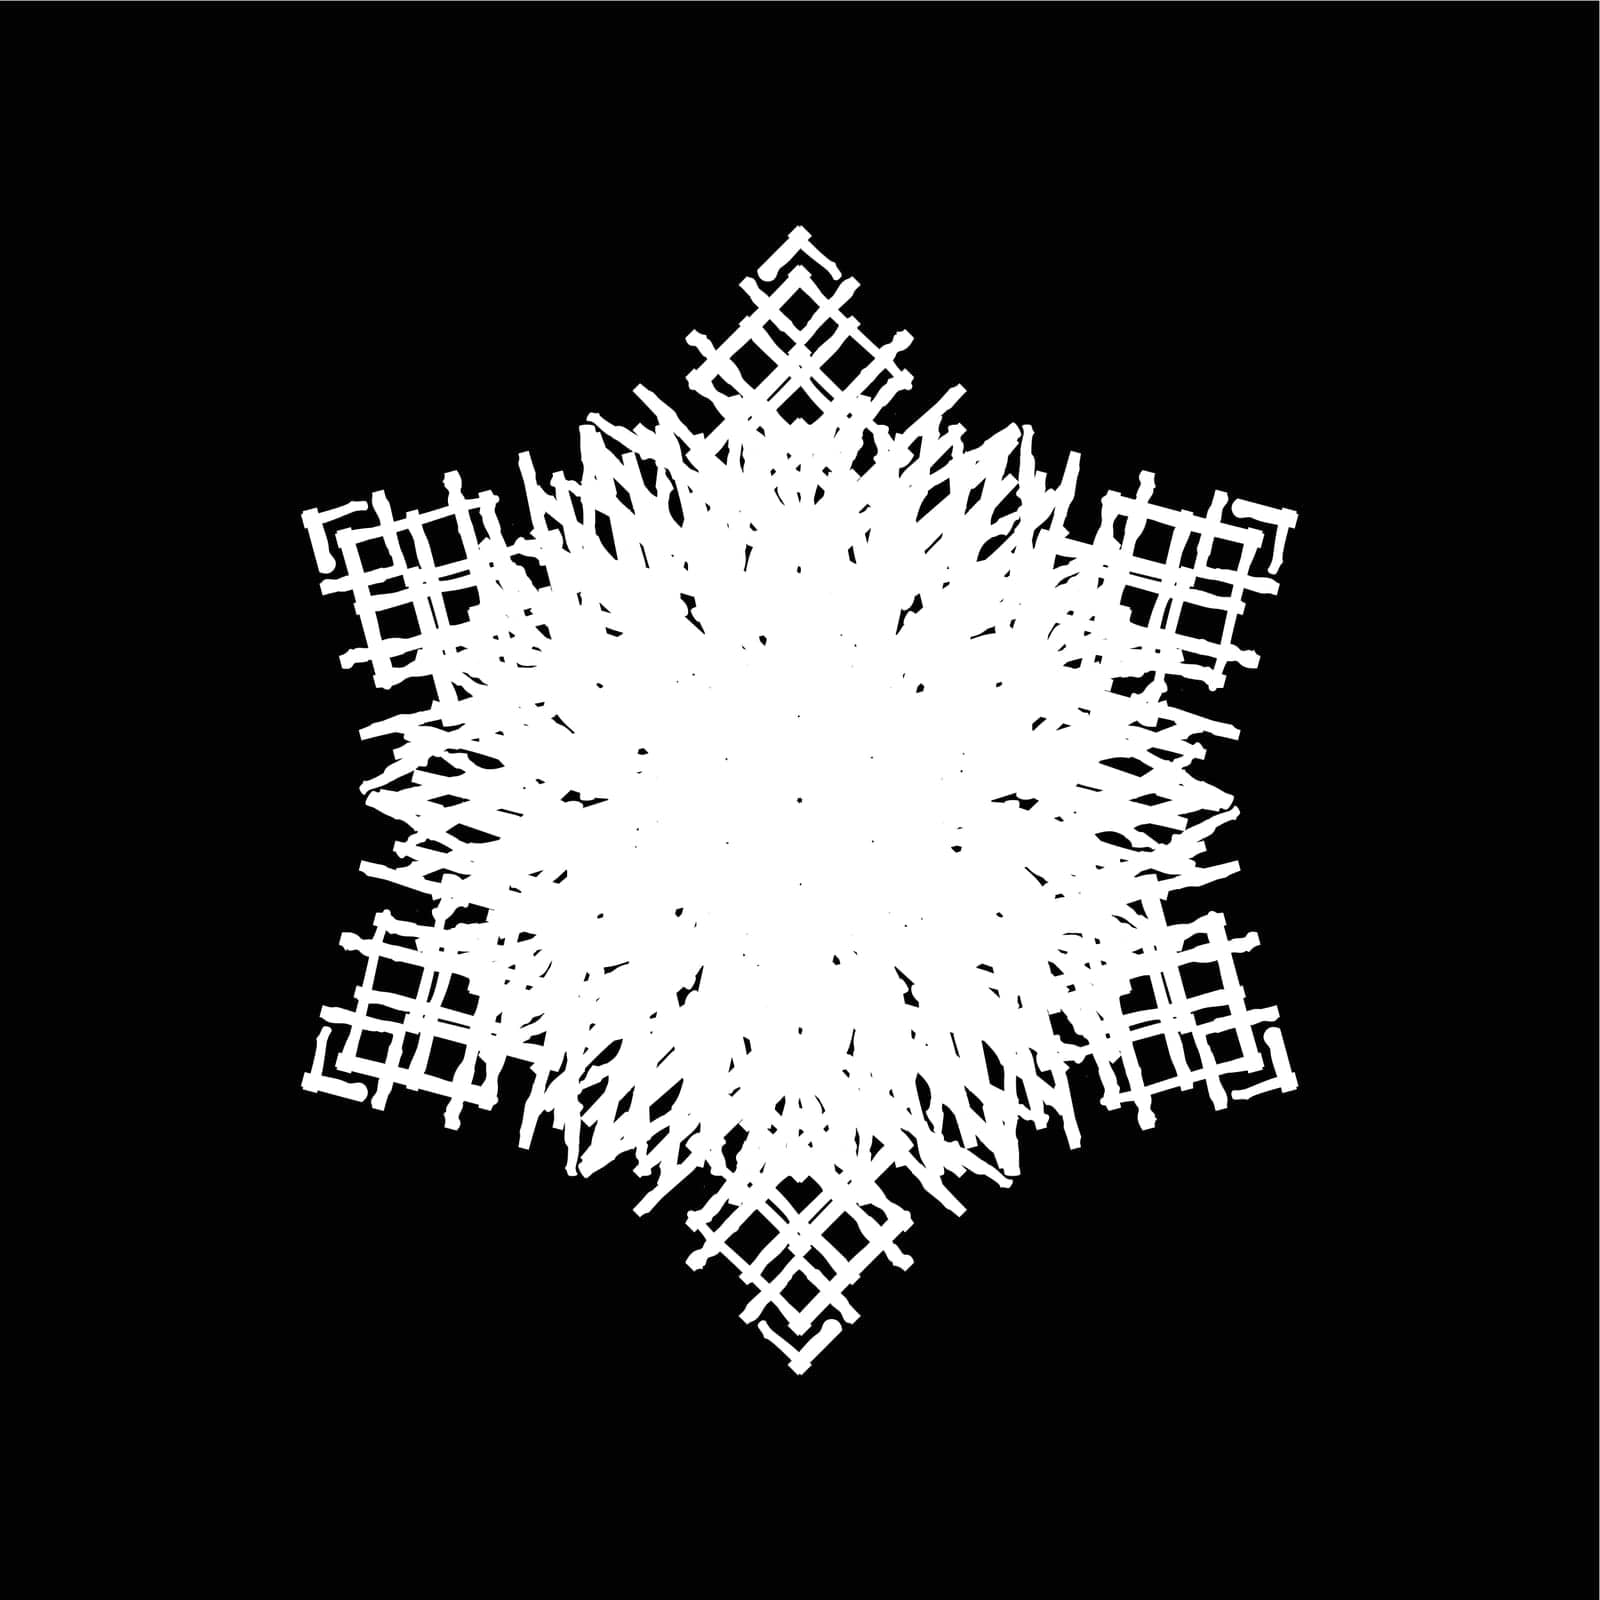 Grunge Isolate Snowflake by benjaminlion